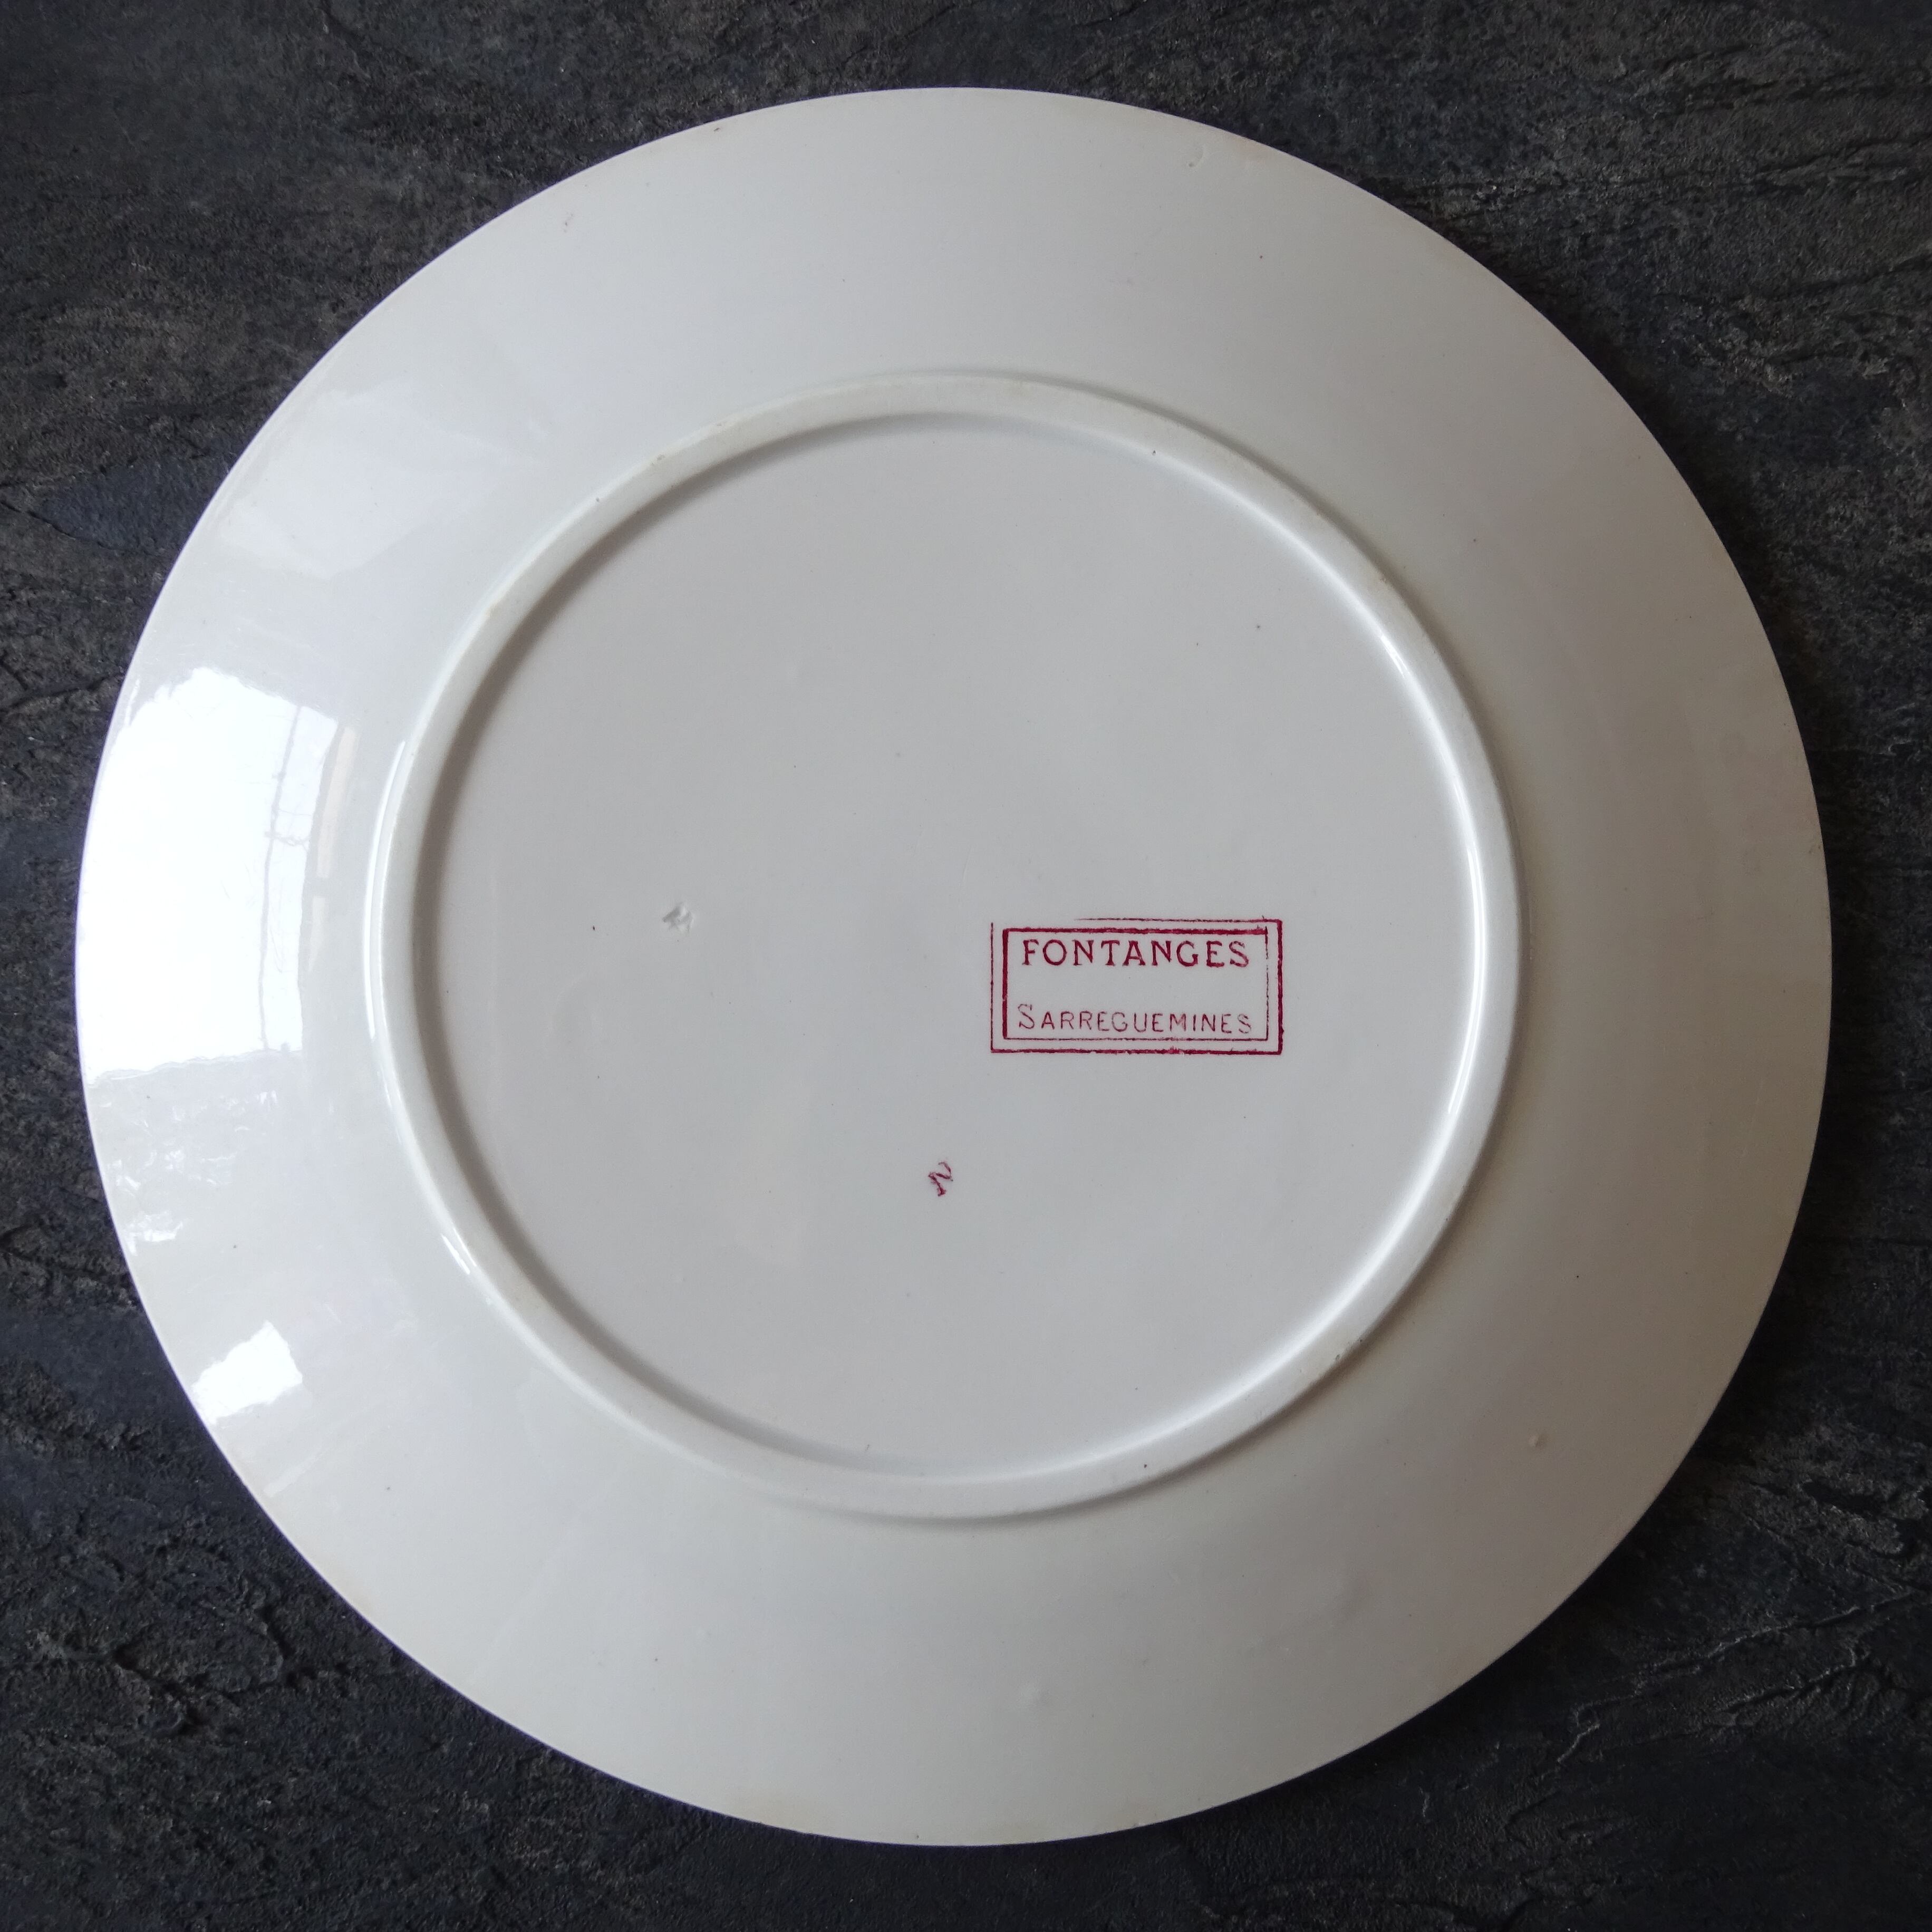 Sarreguemines＊modèle《FONTANGES》assiette plate (B)